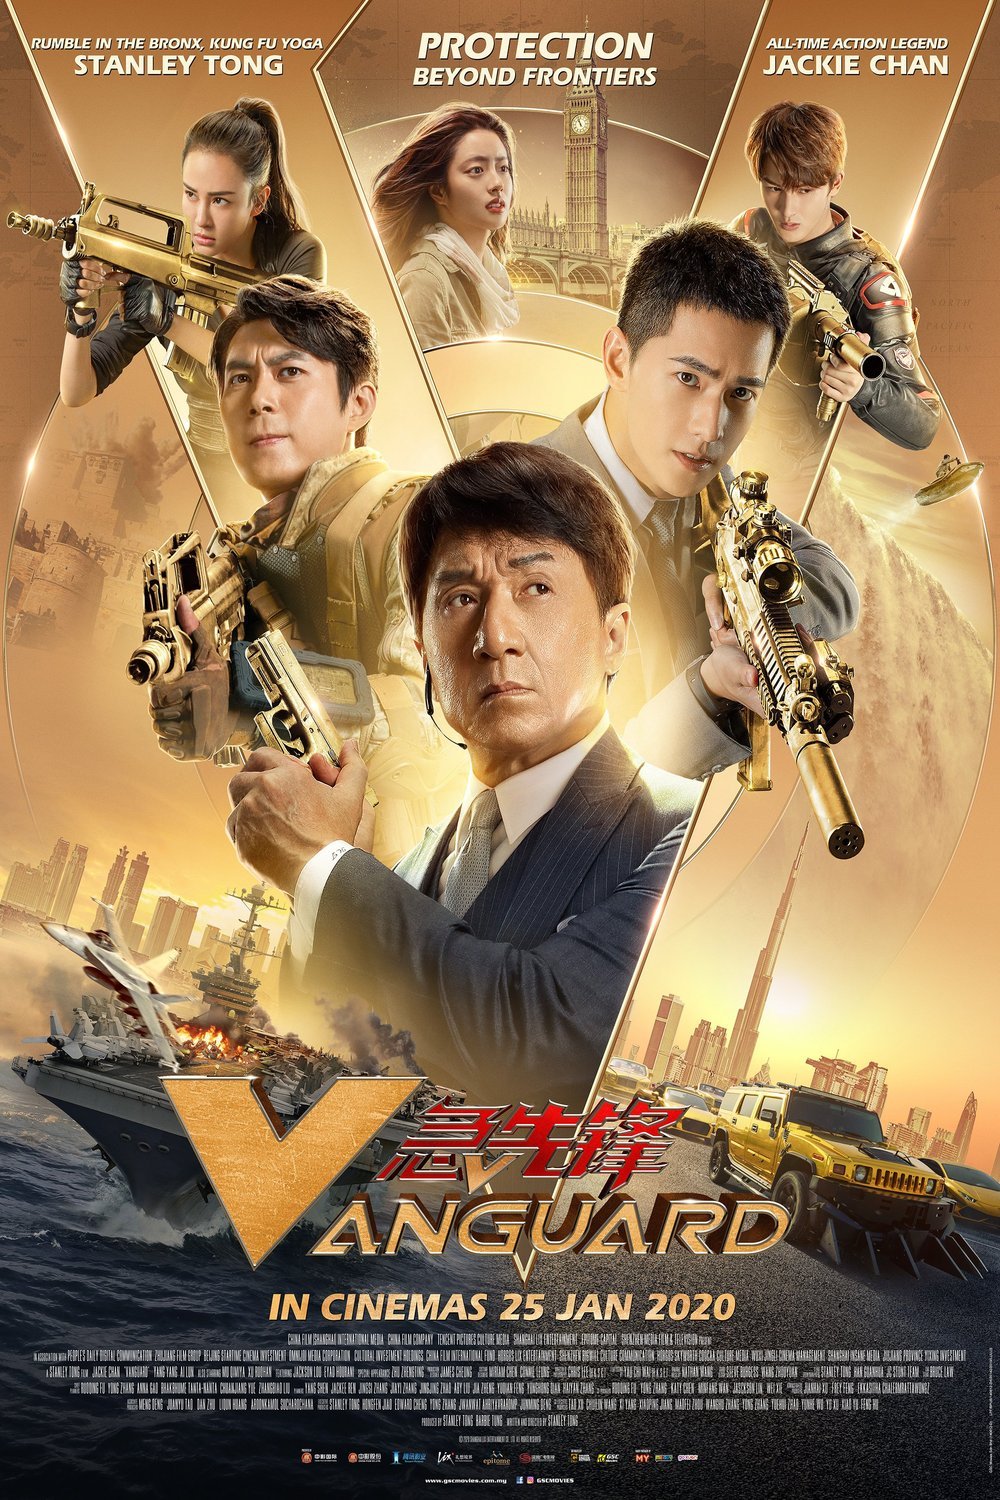 Mandarin poster of the movie Vanguard